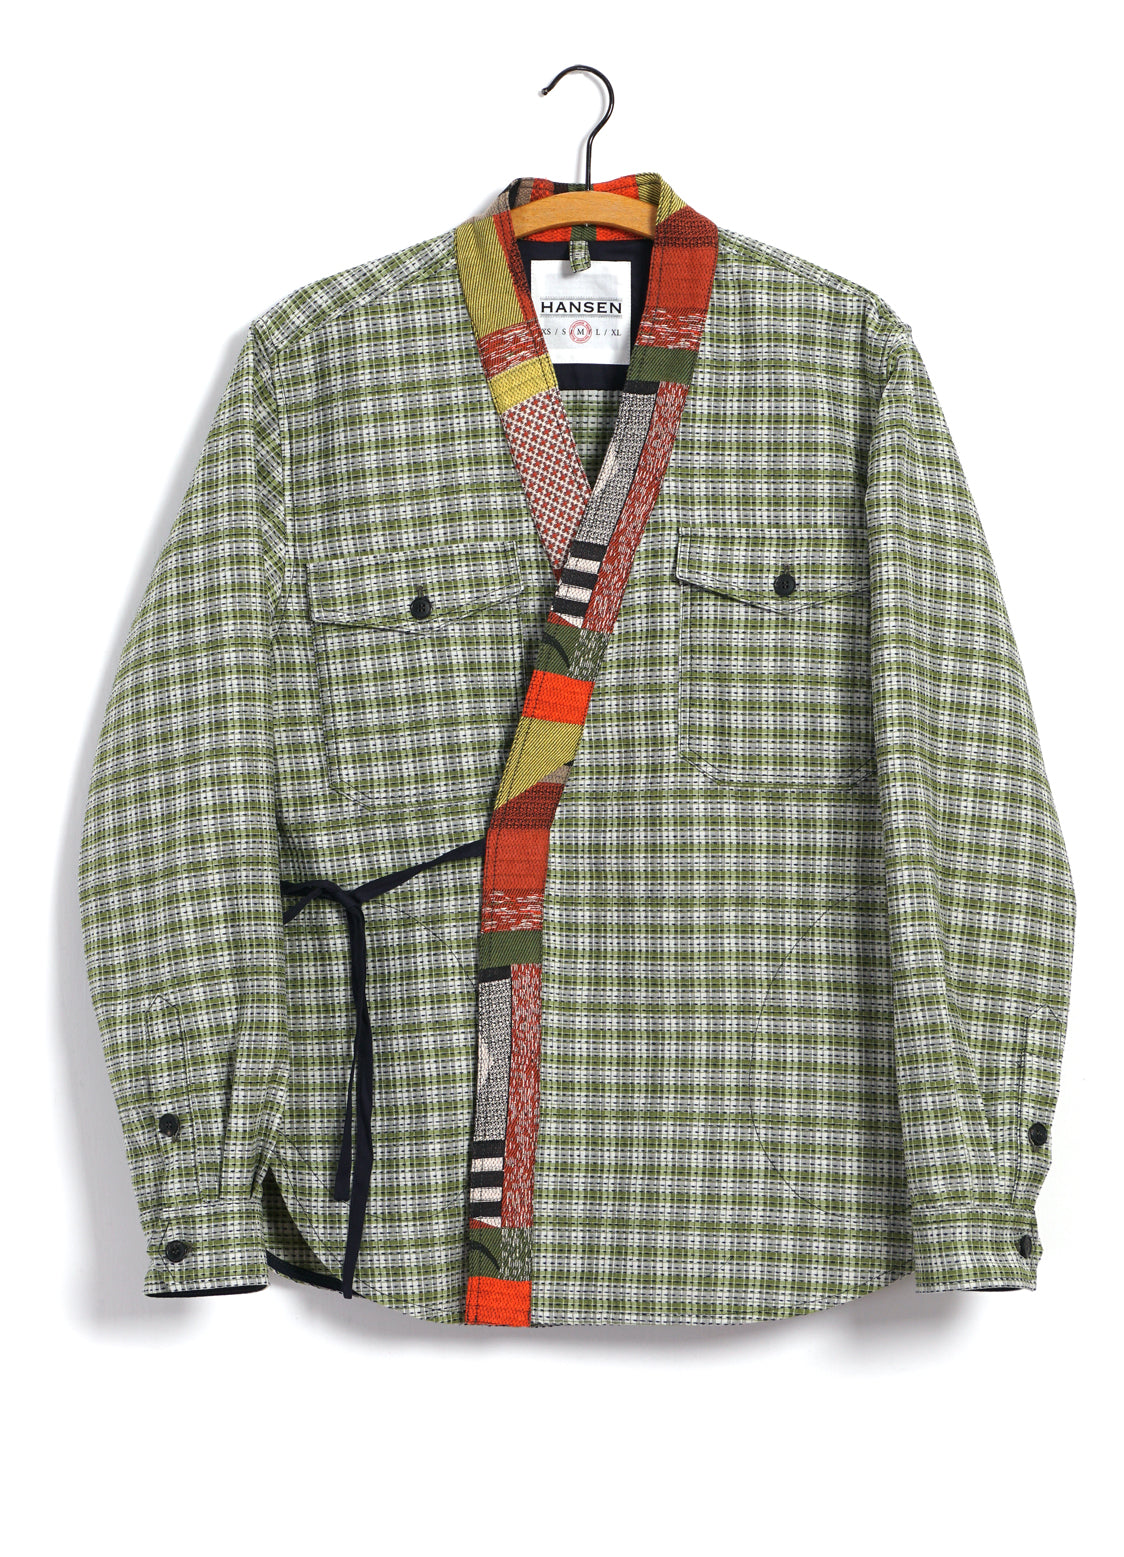 REMY | East & West Shirt Jacket | Sashiko Green+